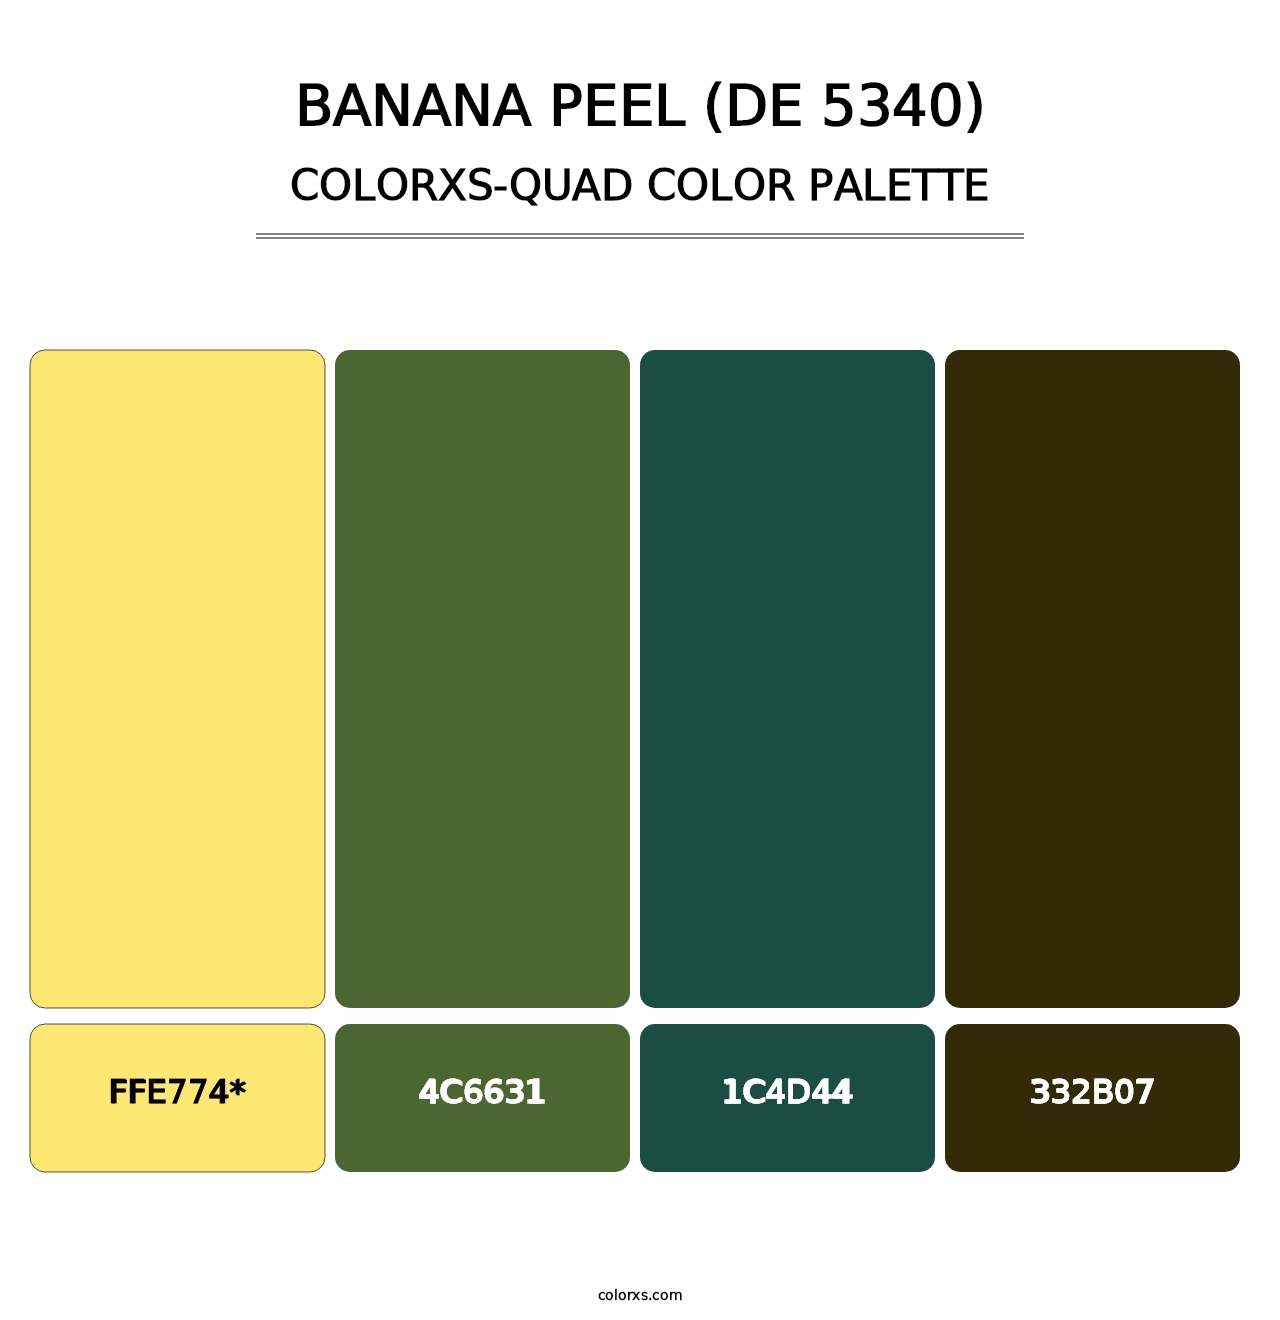 Banana Peel (DE 5340) - Colorxs Quad Palette